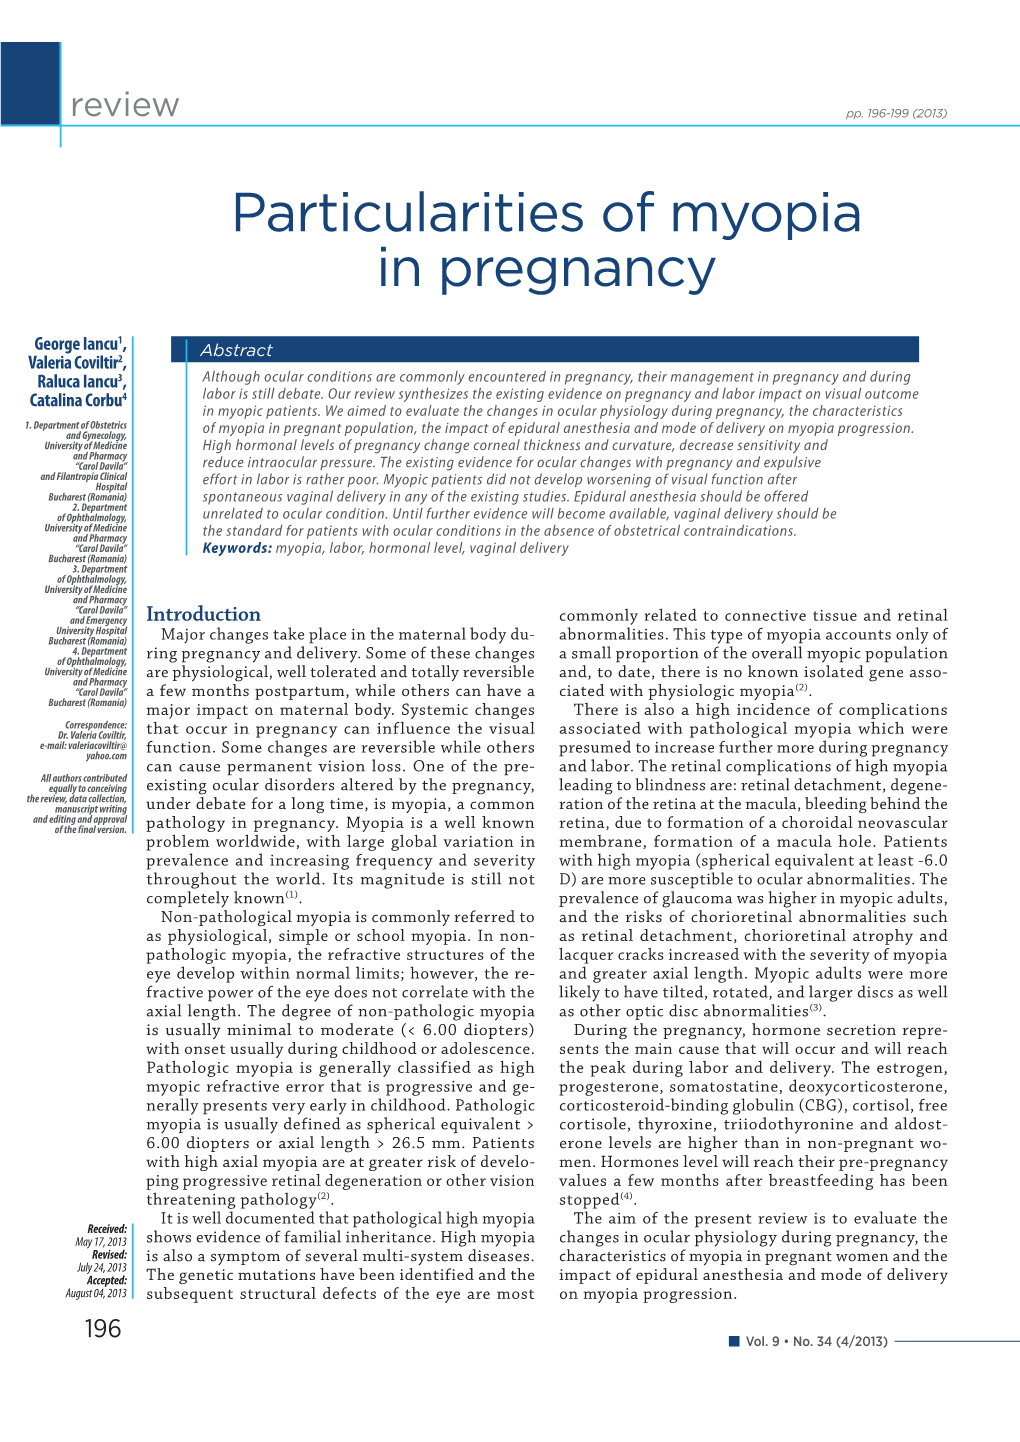 Particularities of Myopia in Pregnancy